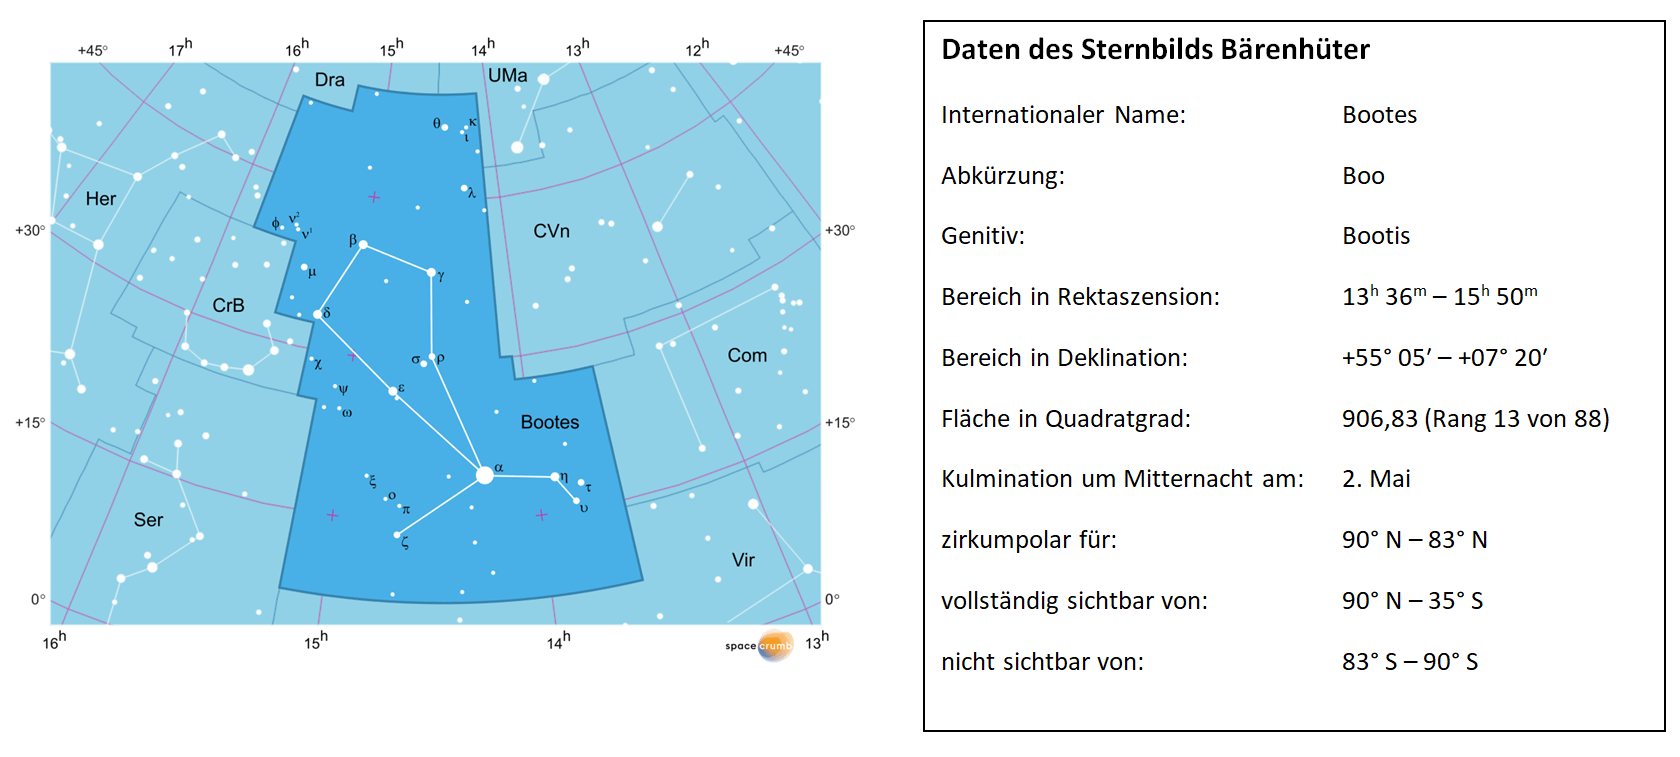 Links zeigt eine mit Koordinaten versehene Karte eines Himmelsausschnitts weiße Sterne auf hellblauem Hintergrund. Die Fläche, die das Sternbild Bärenhüter einnimmt, ist dunkelblau hervorgehoben. Eine Tabelle rechts gibt wichtige Daten des Sternbilds an.